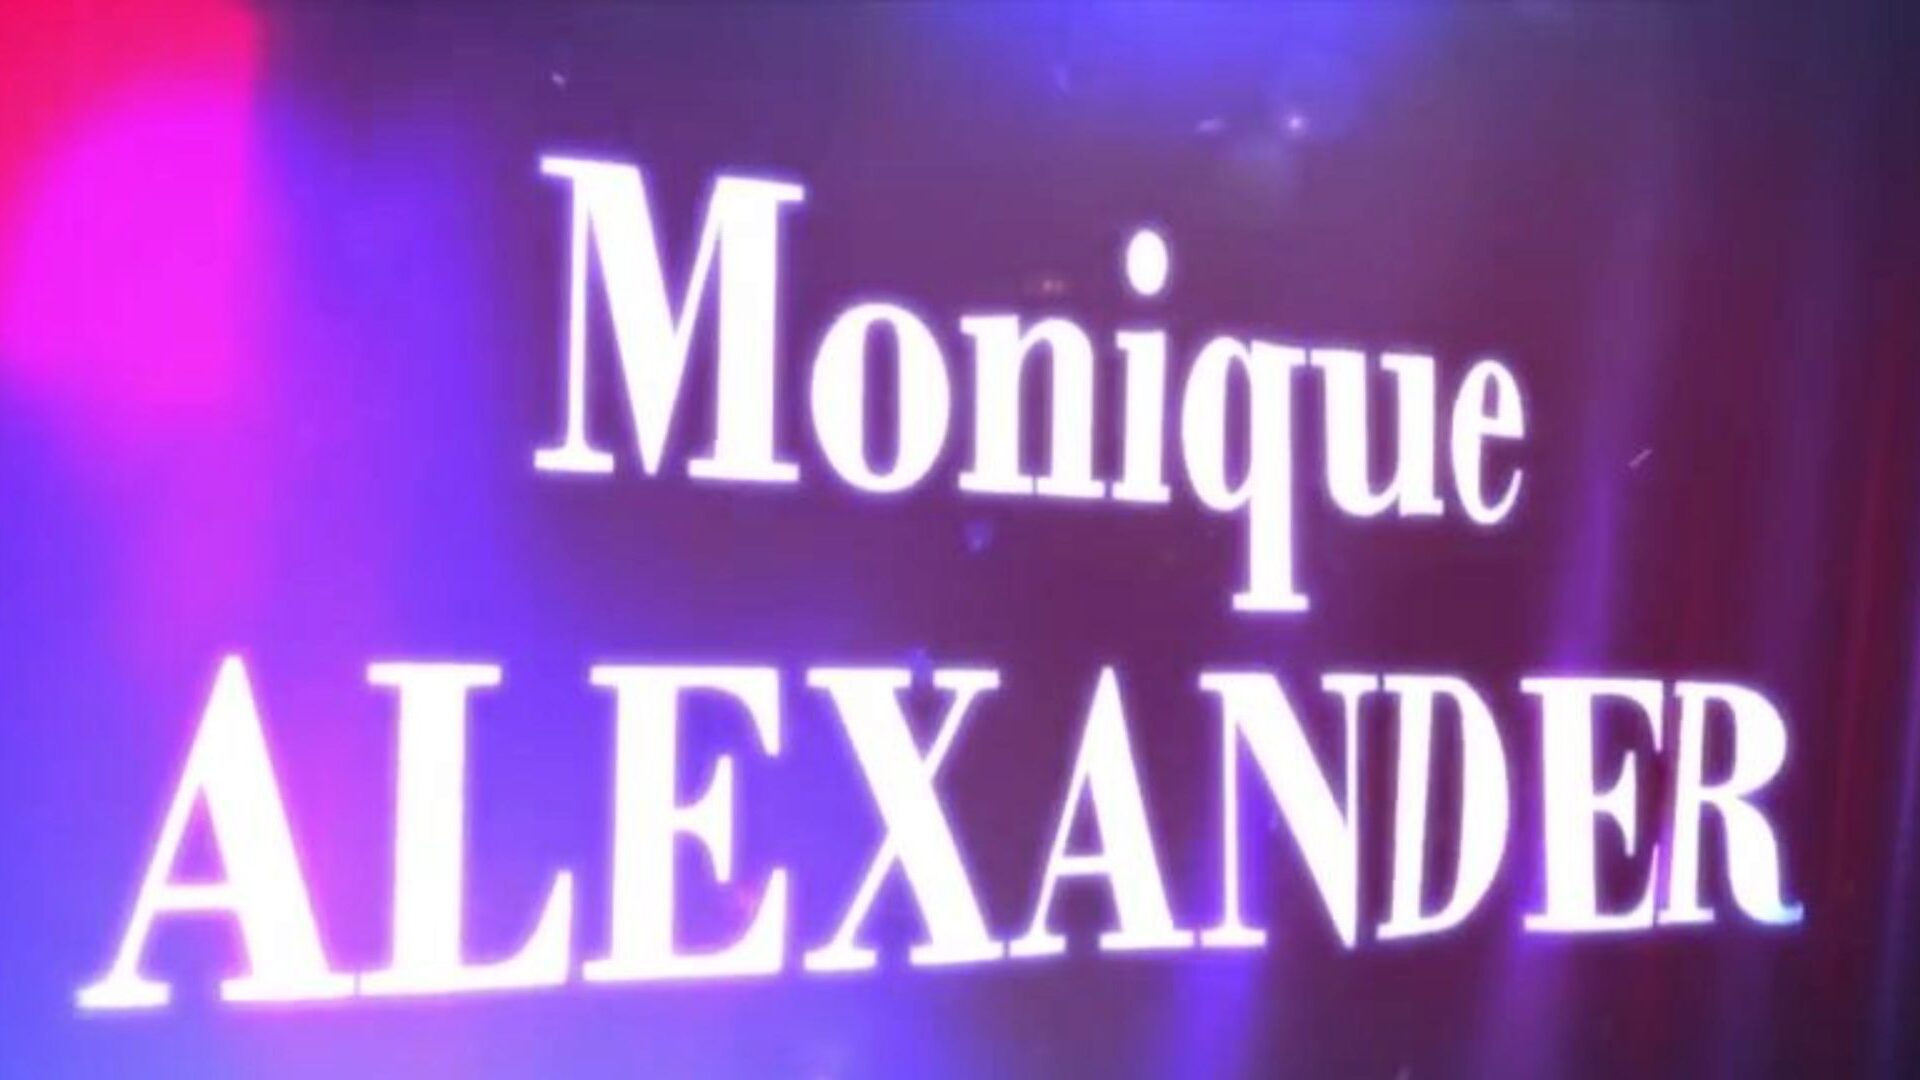 Brazzery - prawdziwe historie żon - co zajmuje jej tak długą scenę z udziałem monique alexander i xandera?